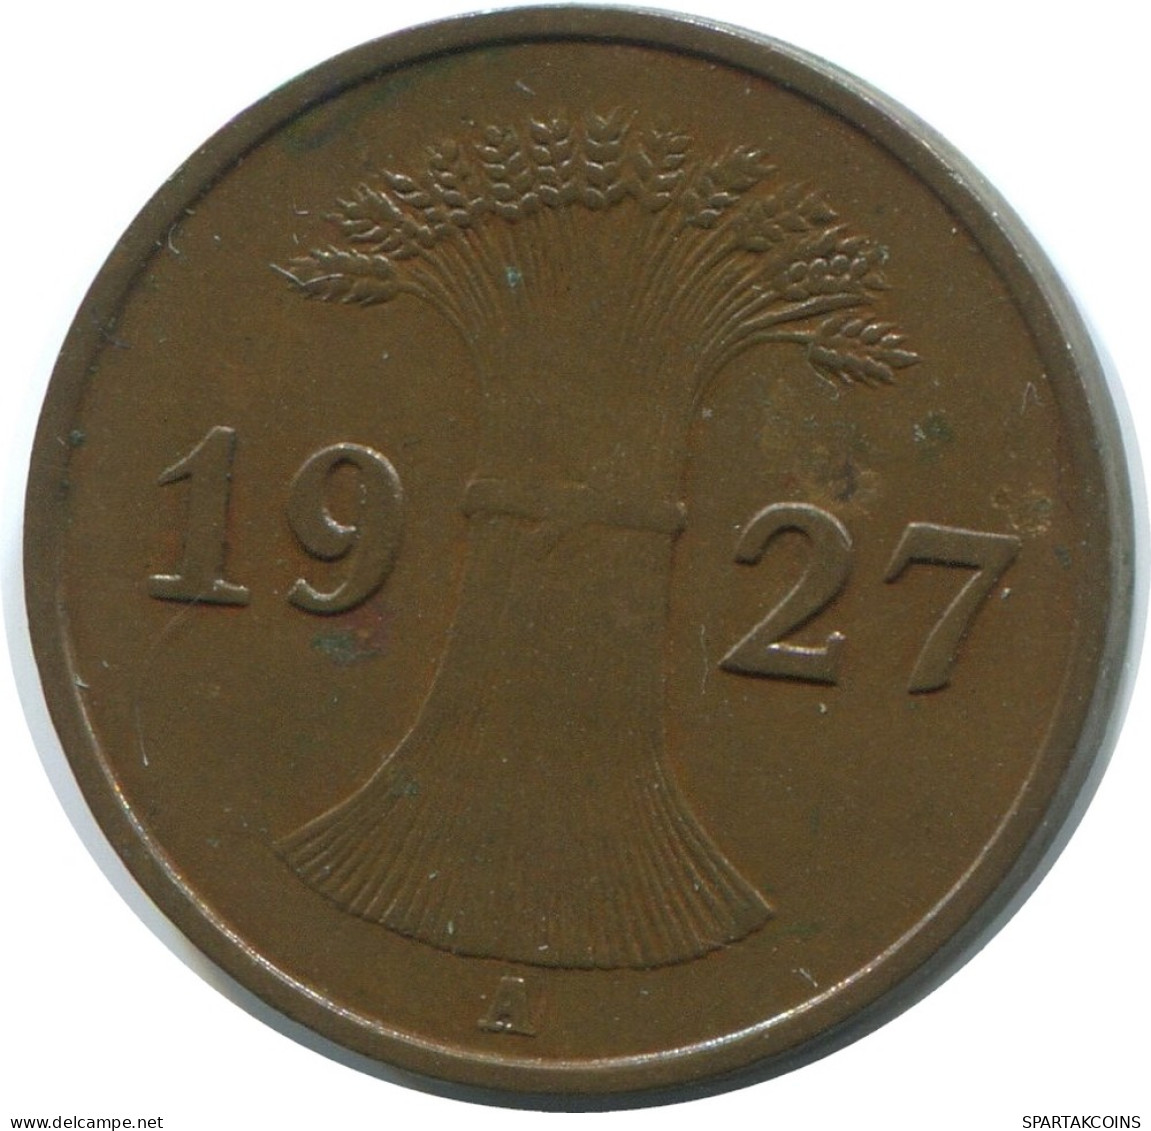 1 REICHSPFENNIG 1927 A DEUTSCHLAND Münze GERMANY #AE198.D - 1 Rentenpfennig & 1 Reichspfennig